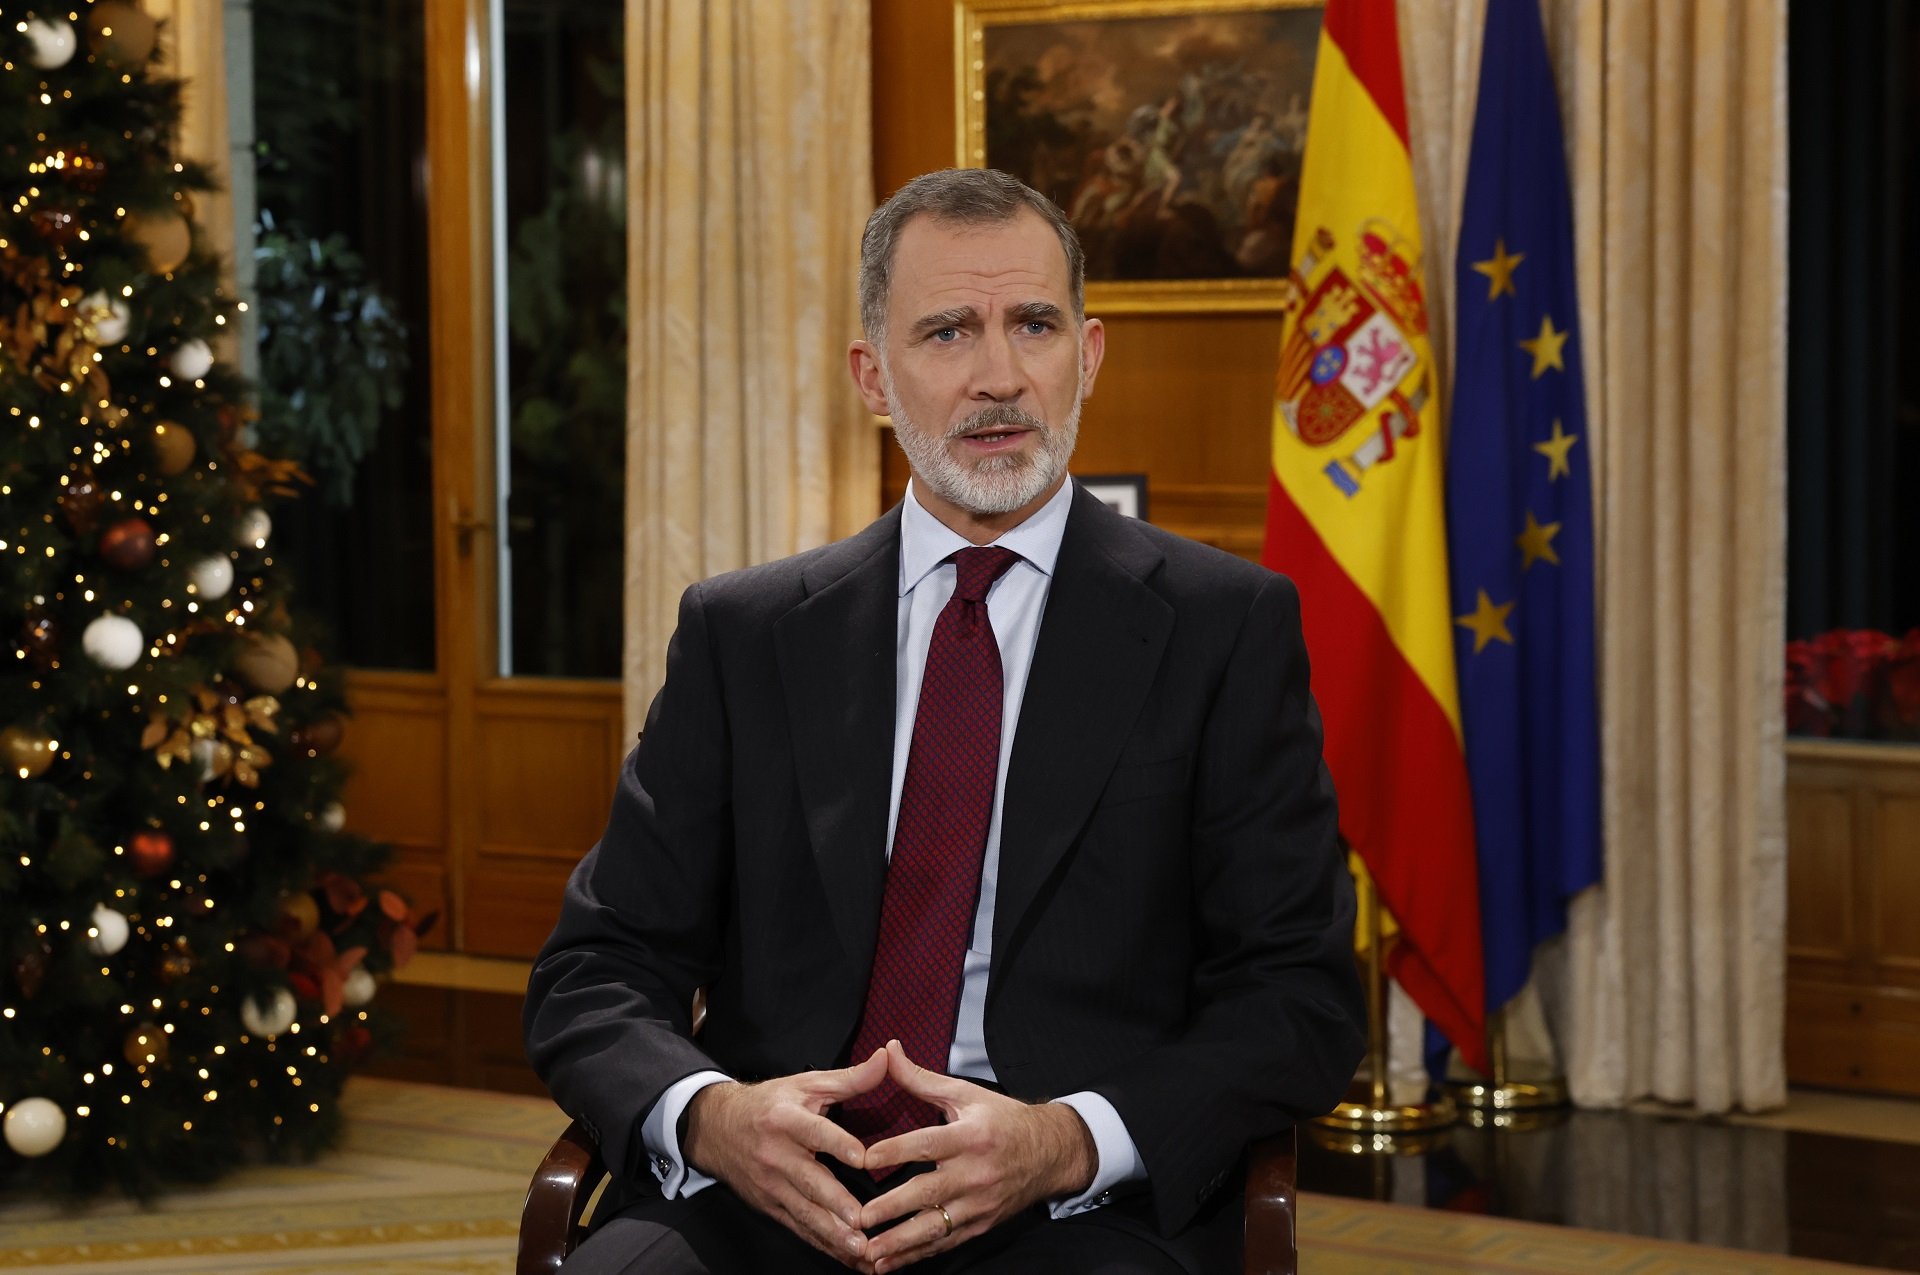 PSOE y PP se unen en el aplauso al discurso del rey, mientras Podemos lo califica de decepcionante